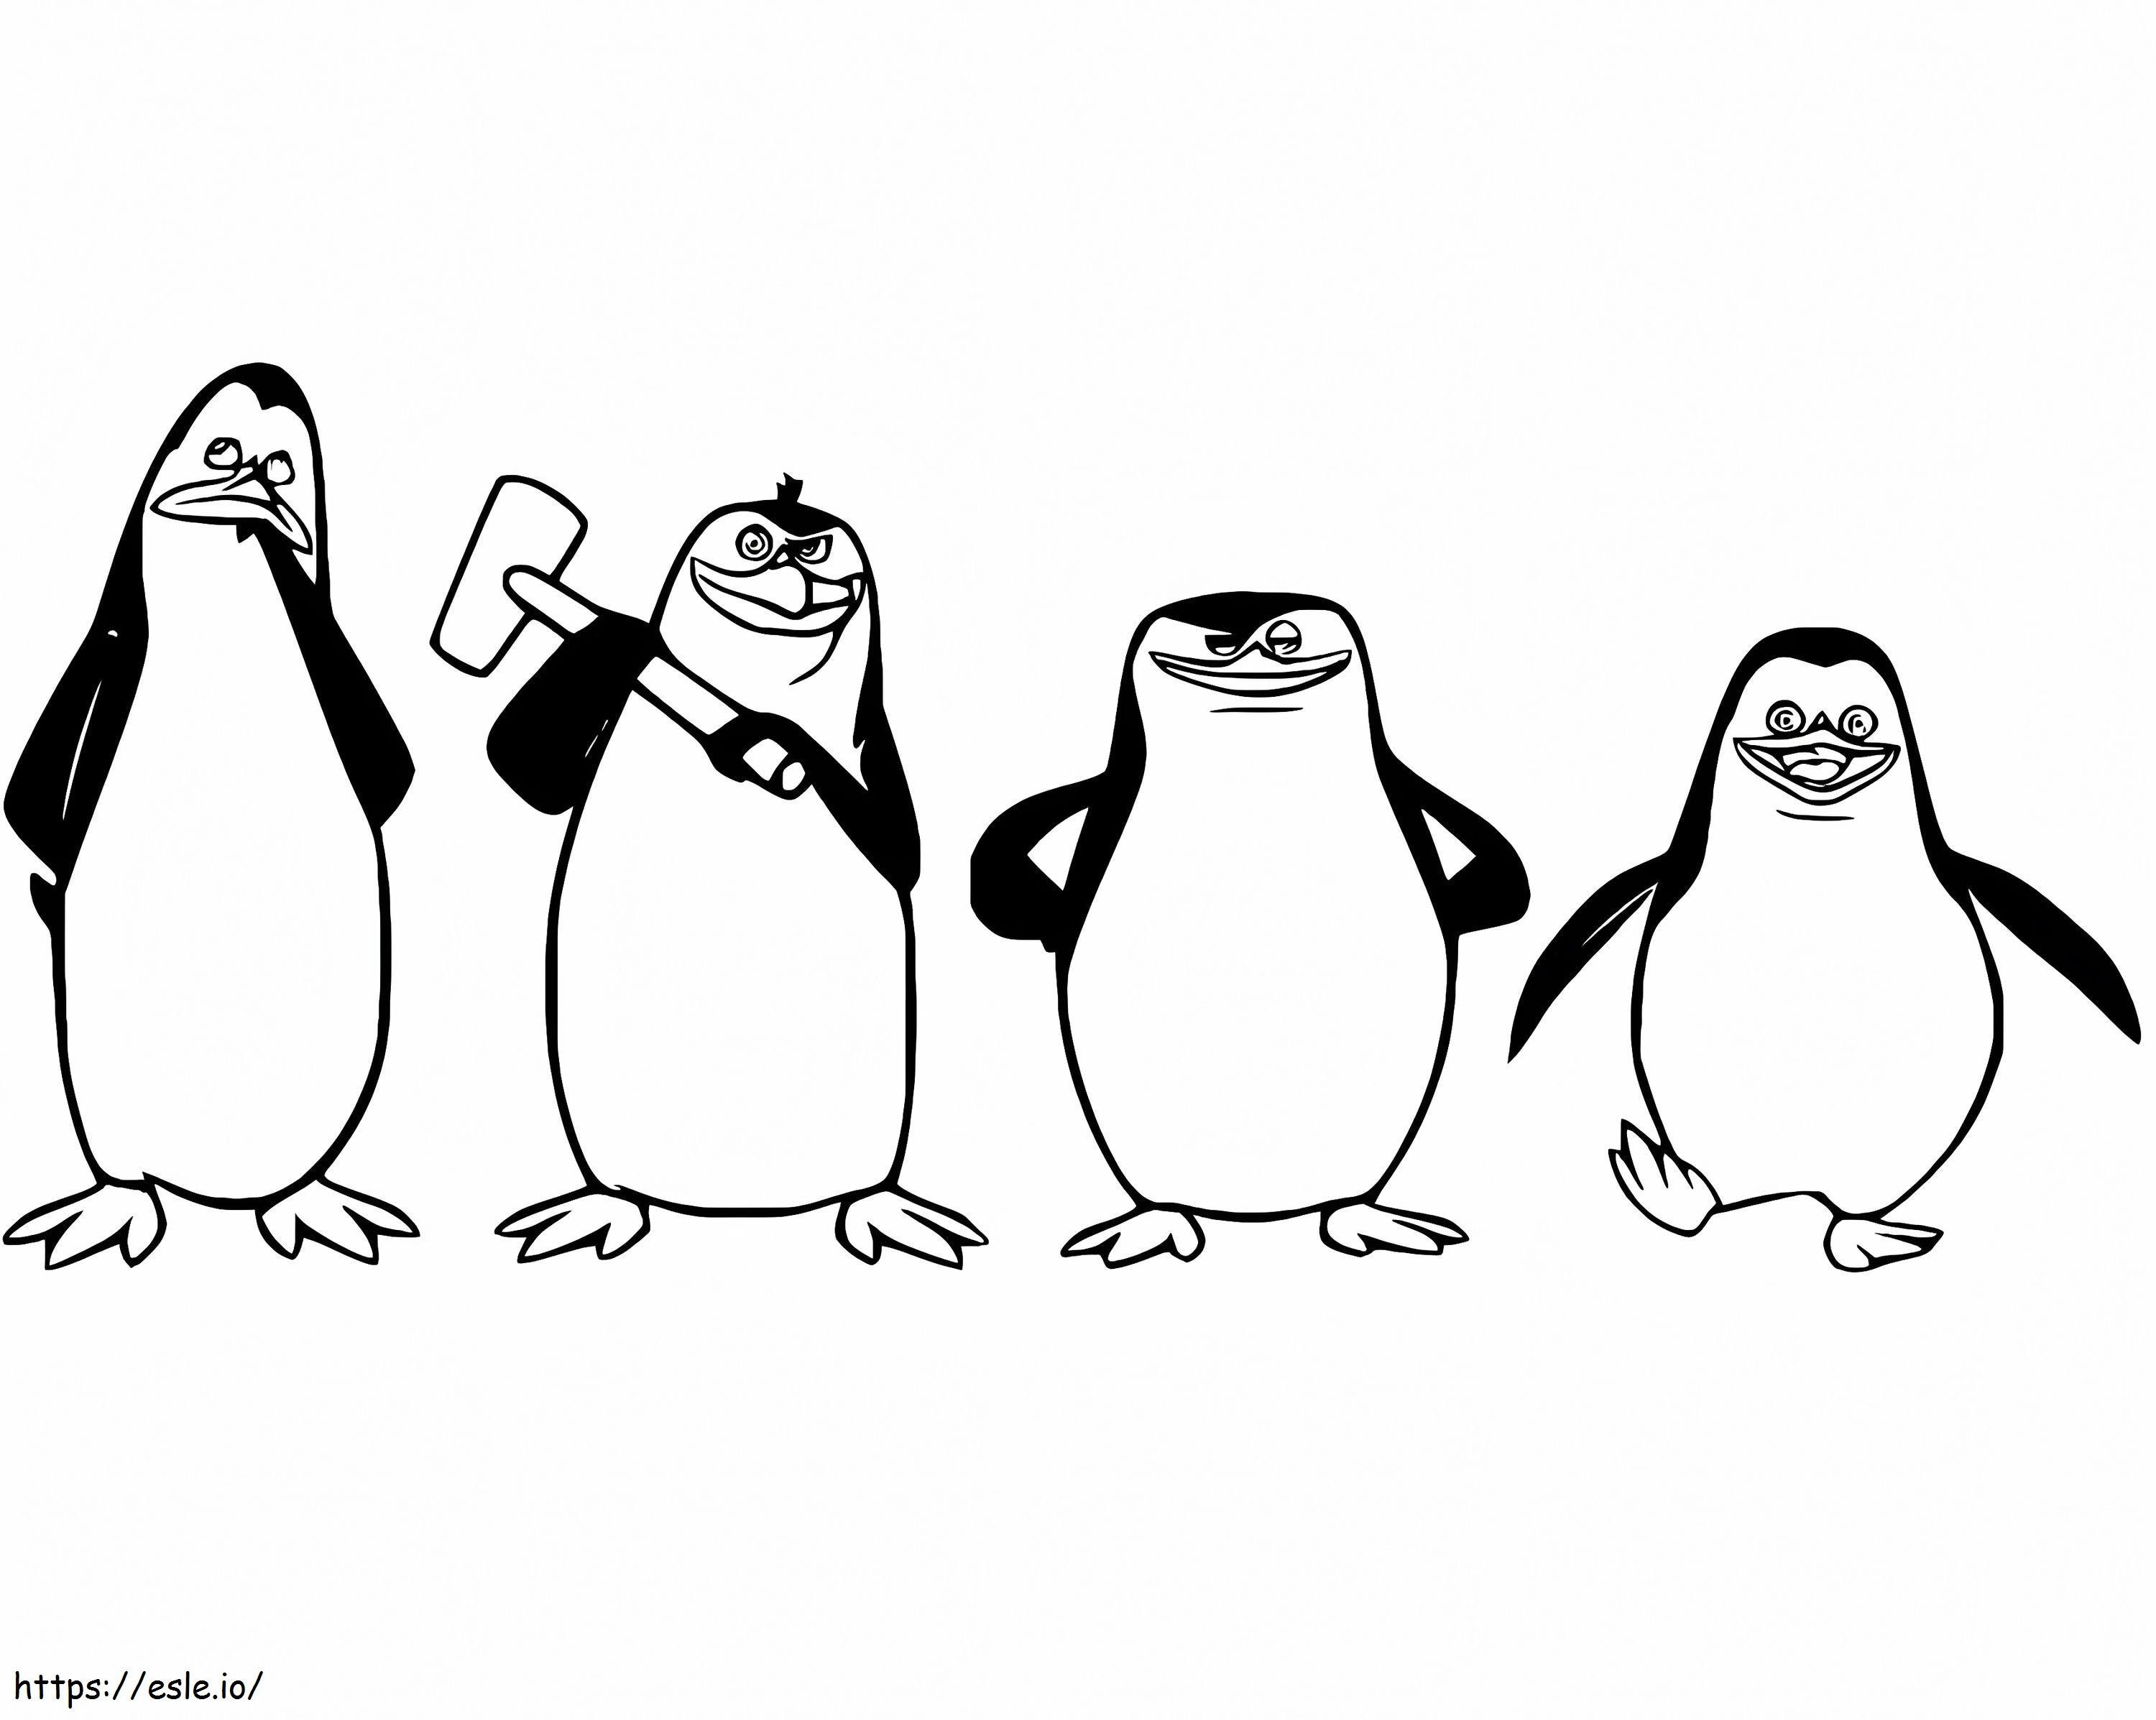 Pinguini di Madagascar gratuiti da colorare